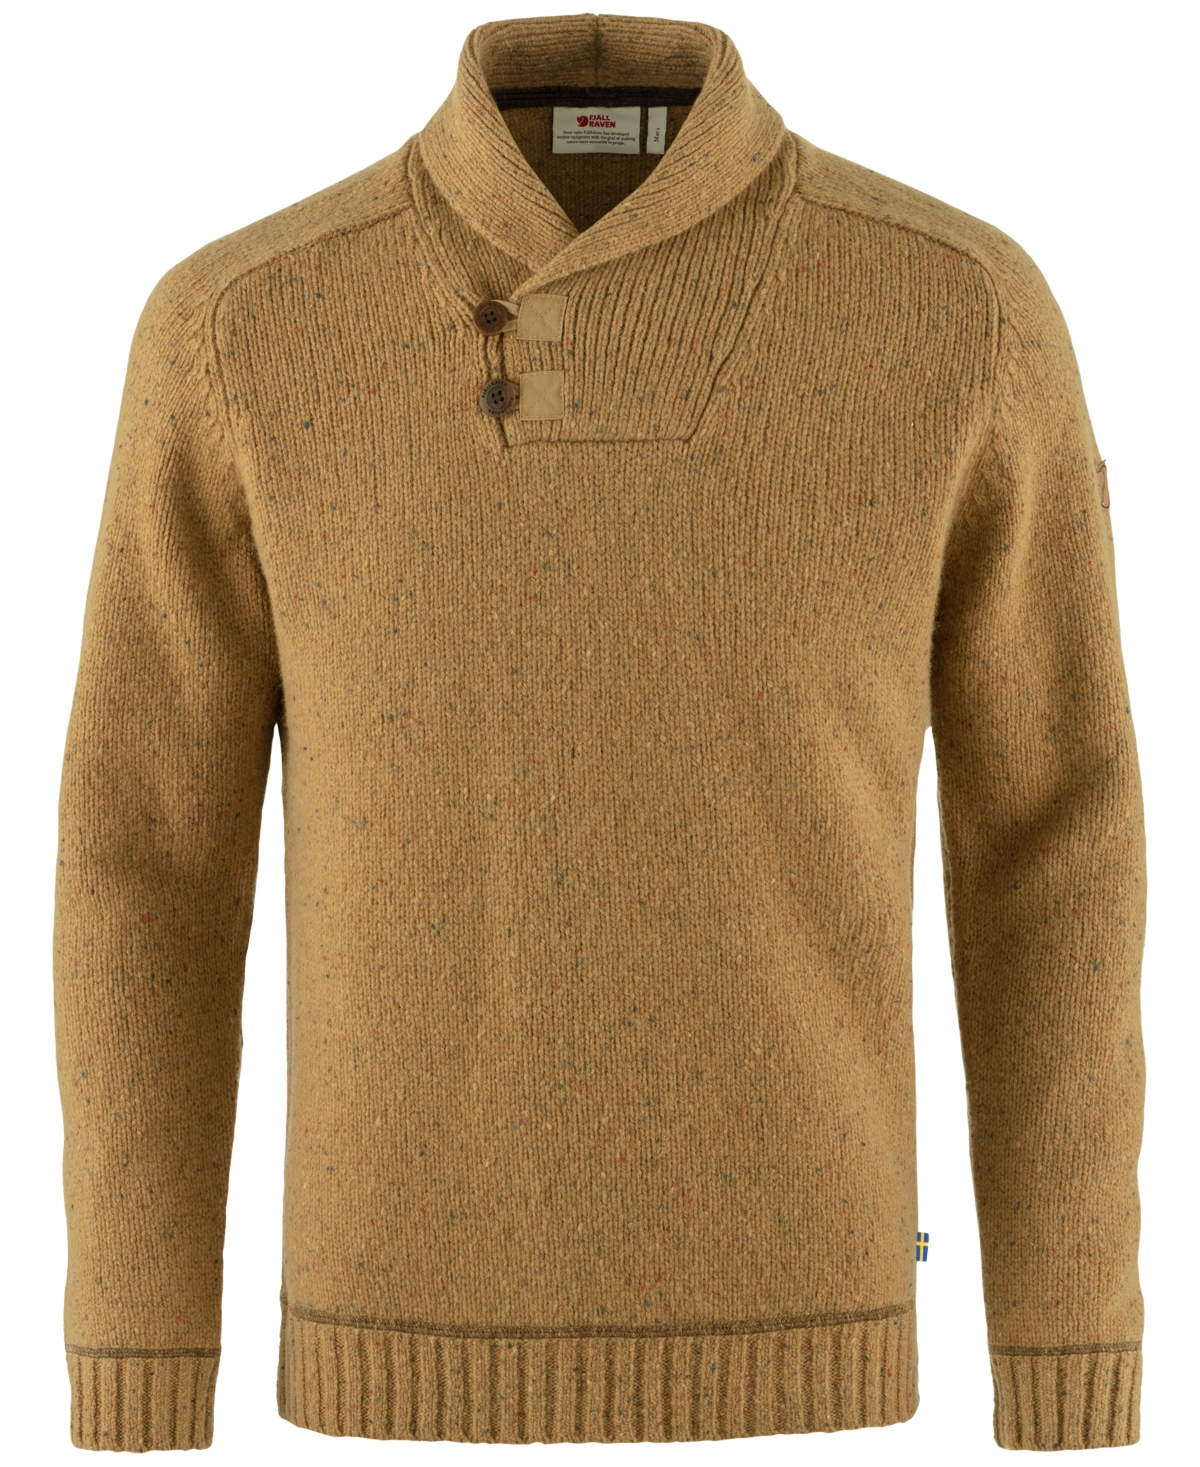 Men's Lada Sweater - Buckwheat Brown